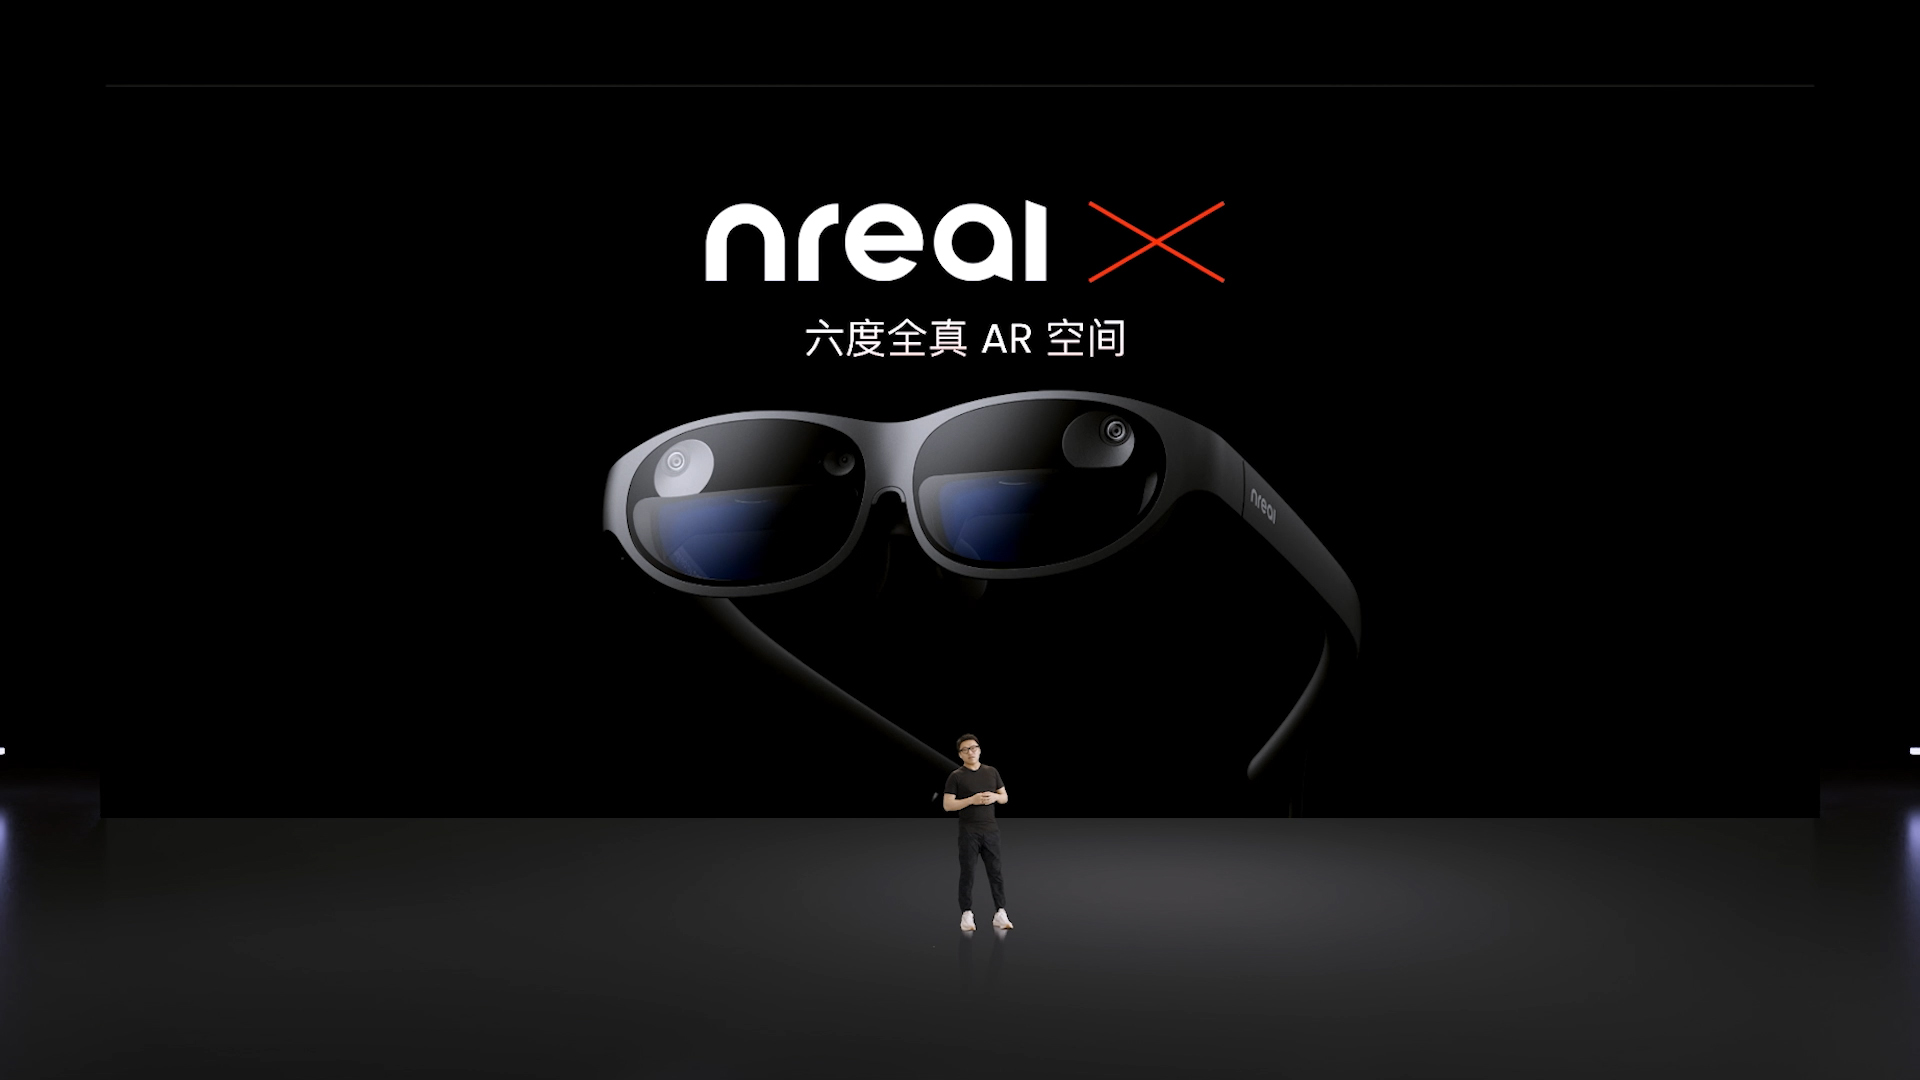 “Nreal“惊鸿锐影”光学引擎2.0：空间视网膜级显示 三项莱茵权威护眼认证